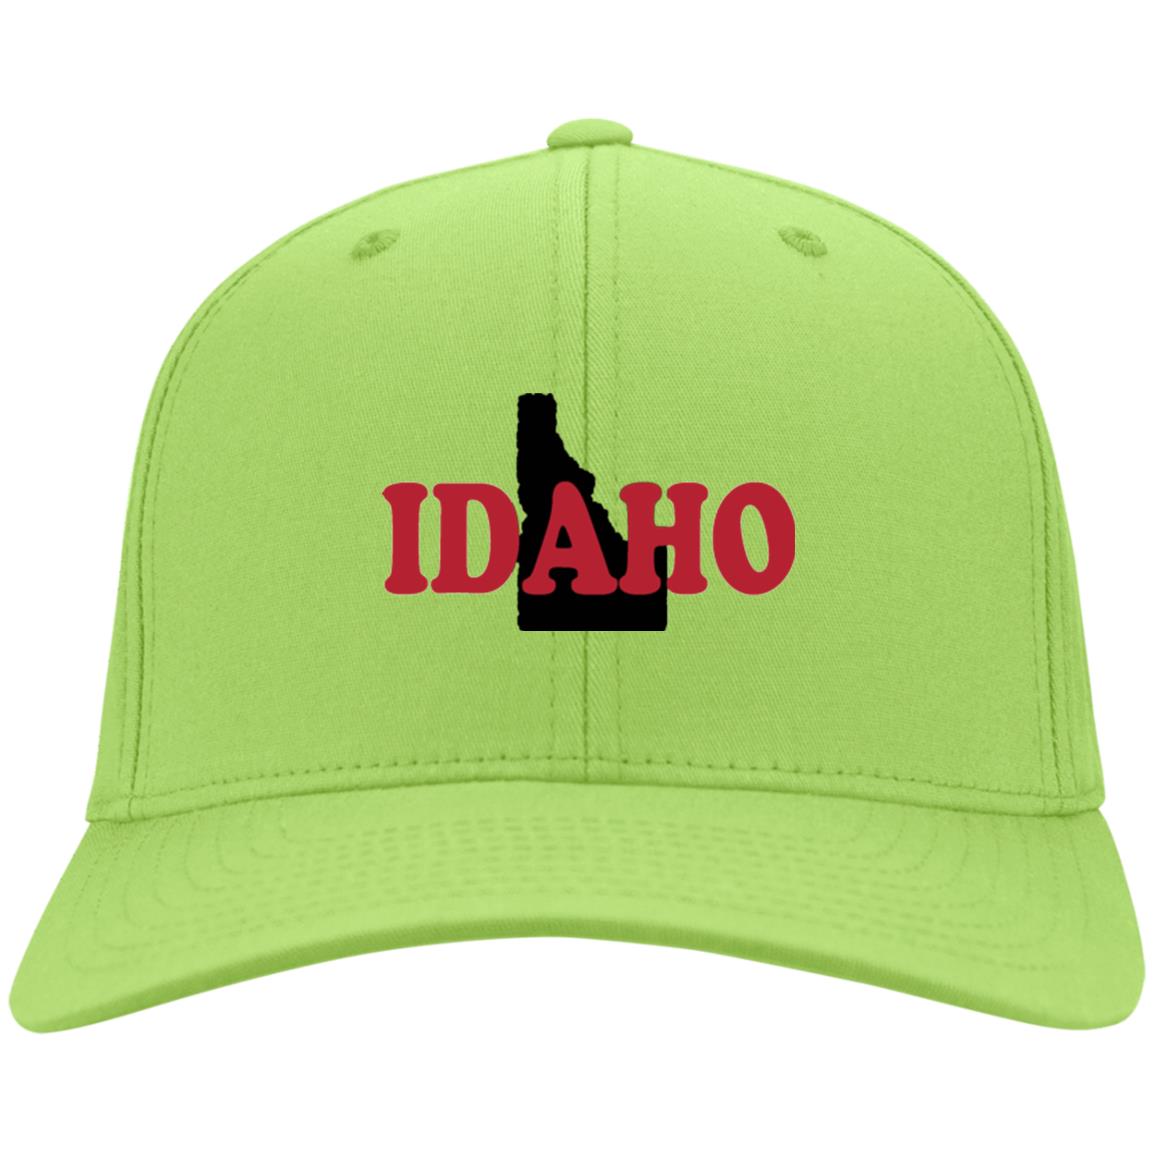 Idaho State Hat